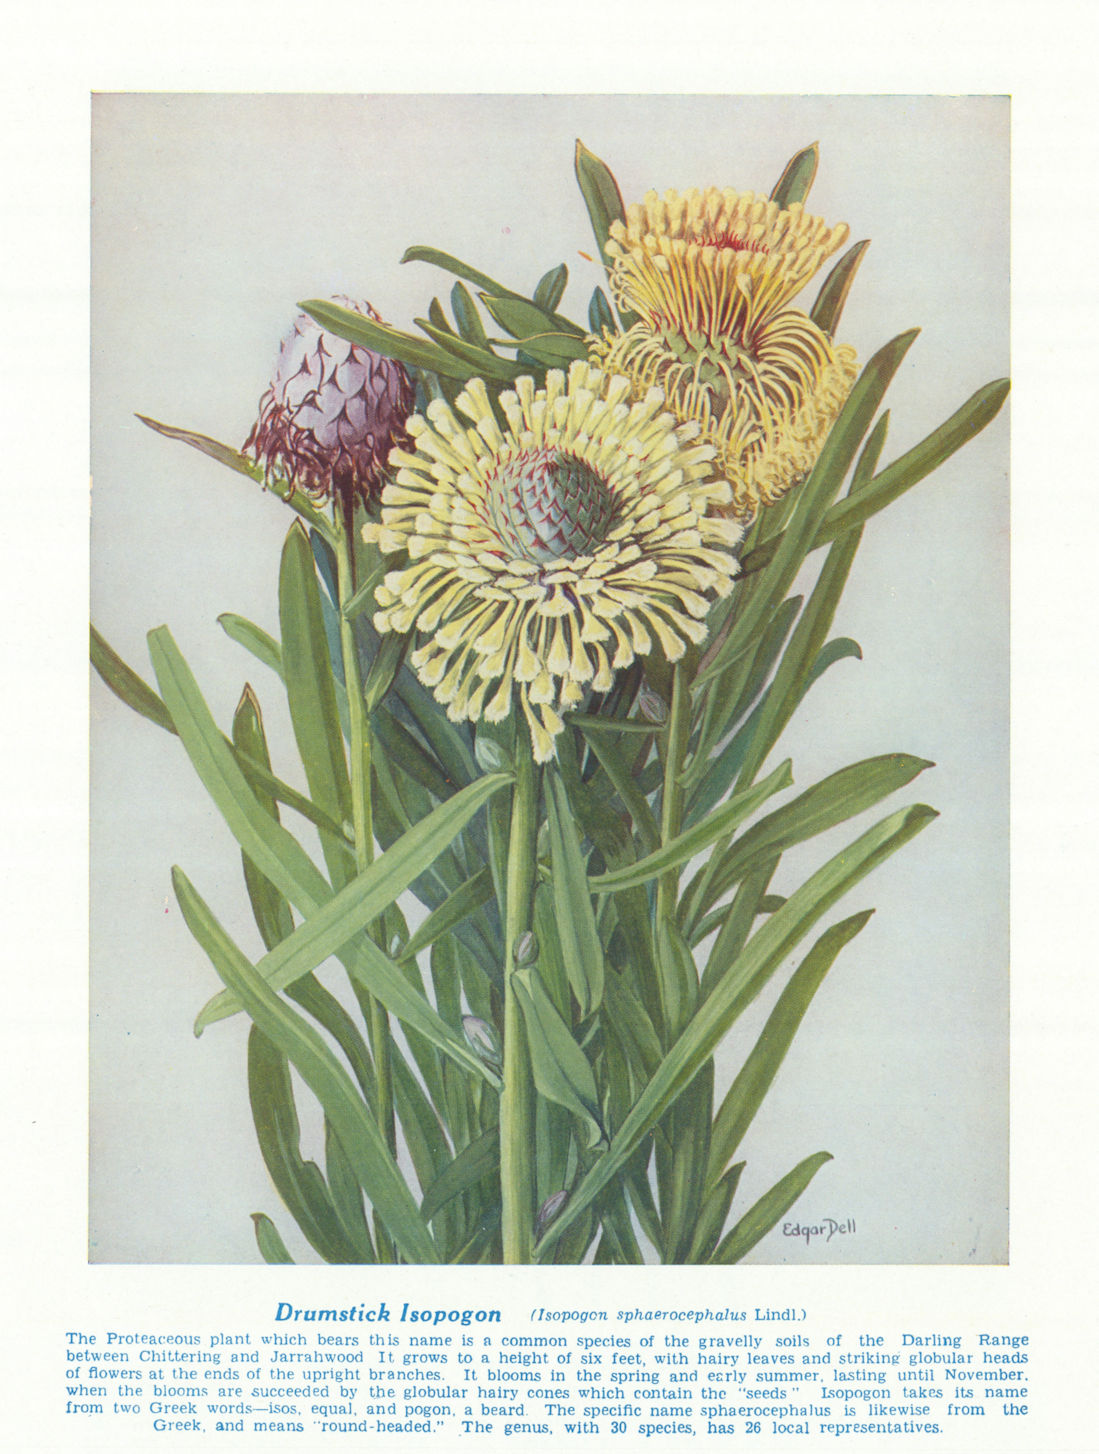 Drumstick lsopogon (lsopogon sphaerocephalus). West Australian Wild Flowers 1950